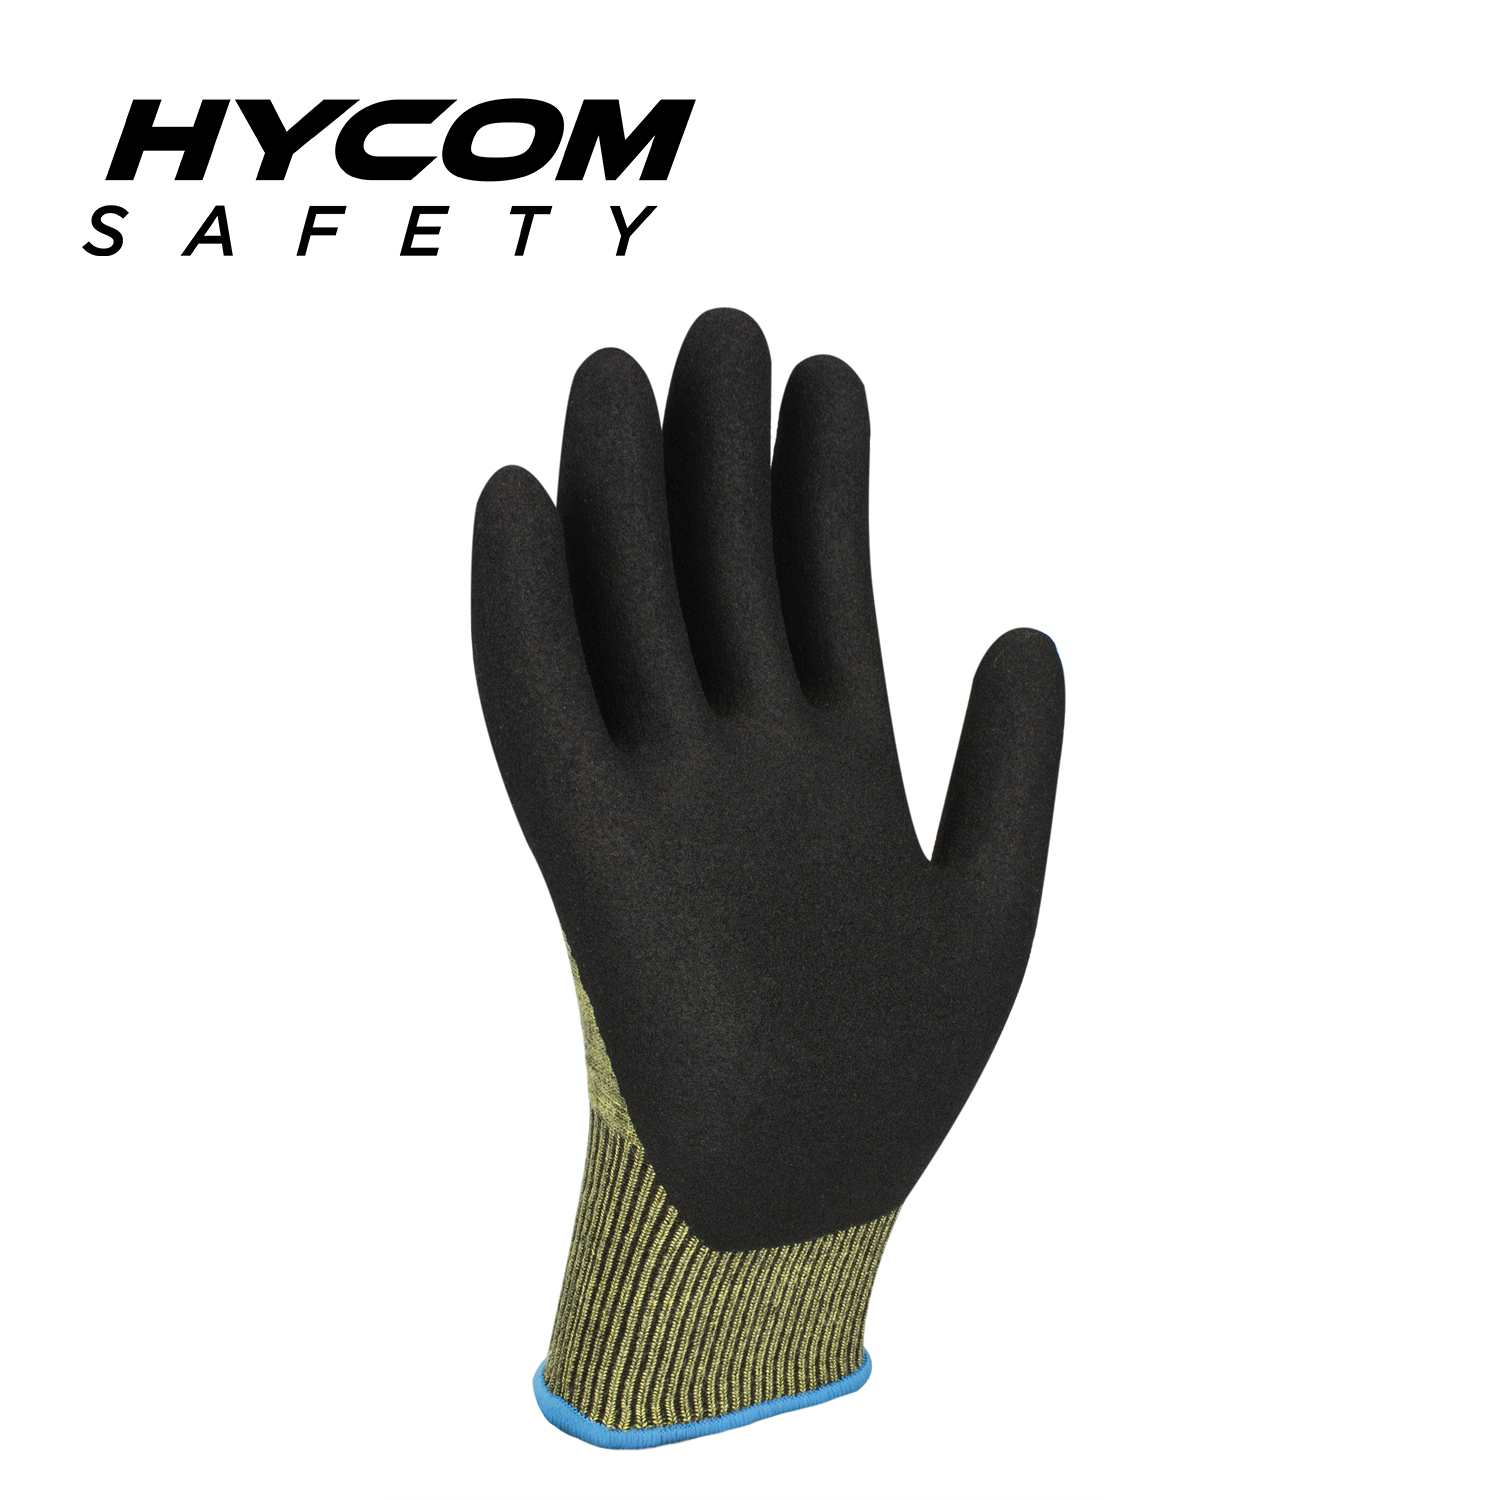 HYCOM 15G ANSI Cut 5 Hitzebeständiger Handschuh, beschichtet mit Schaumstoff-Nitril-Hochschnitt-Aramid-Handschuh